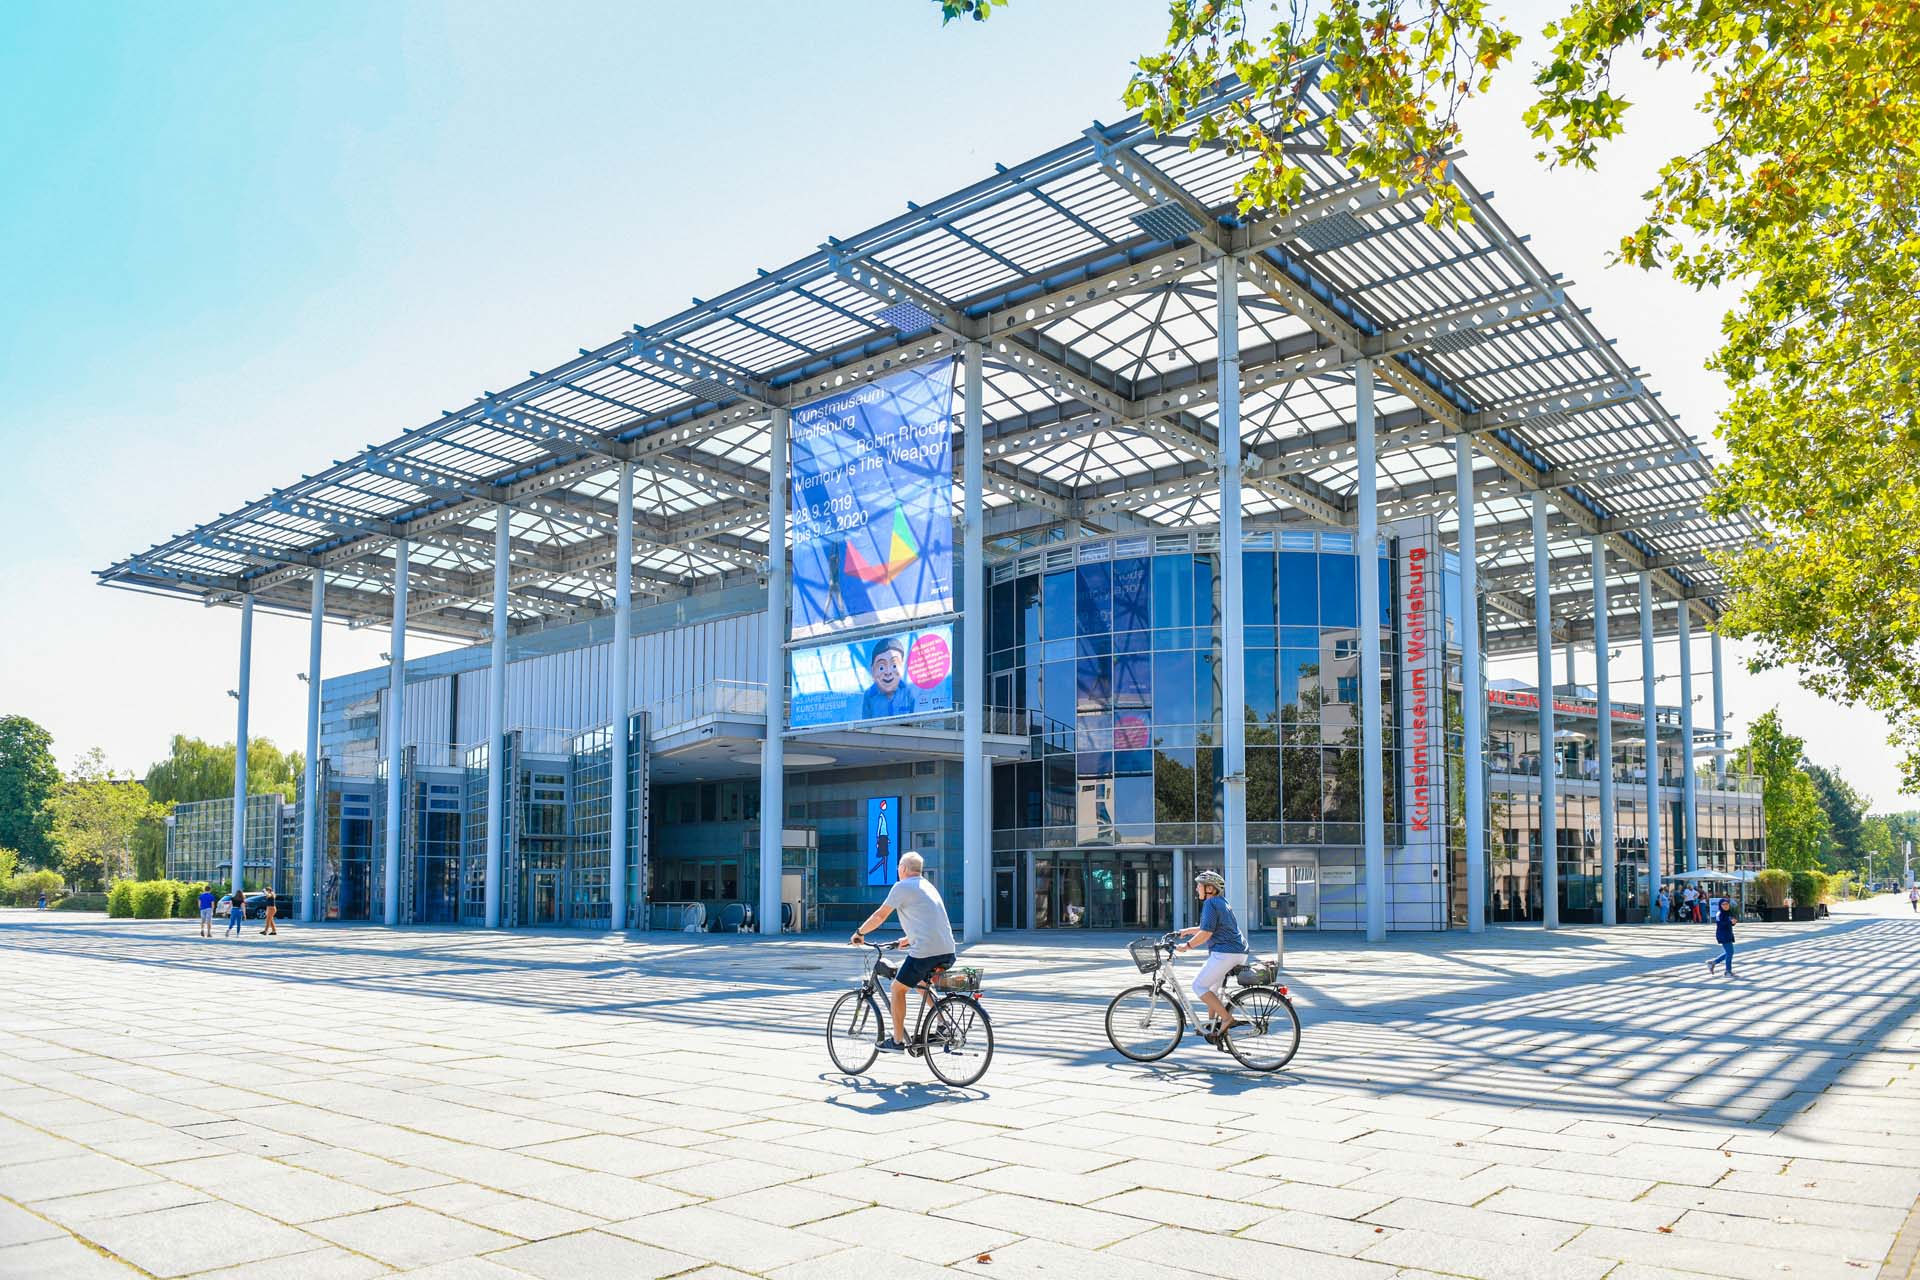 Man blickt von außen auf das Kunstmuseum Wolfsburg